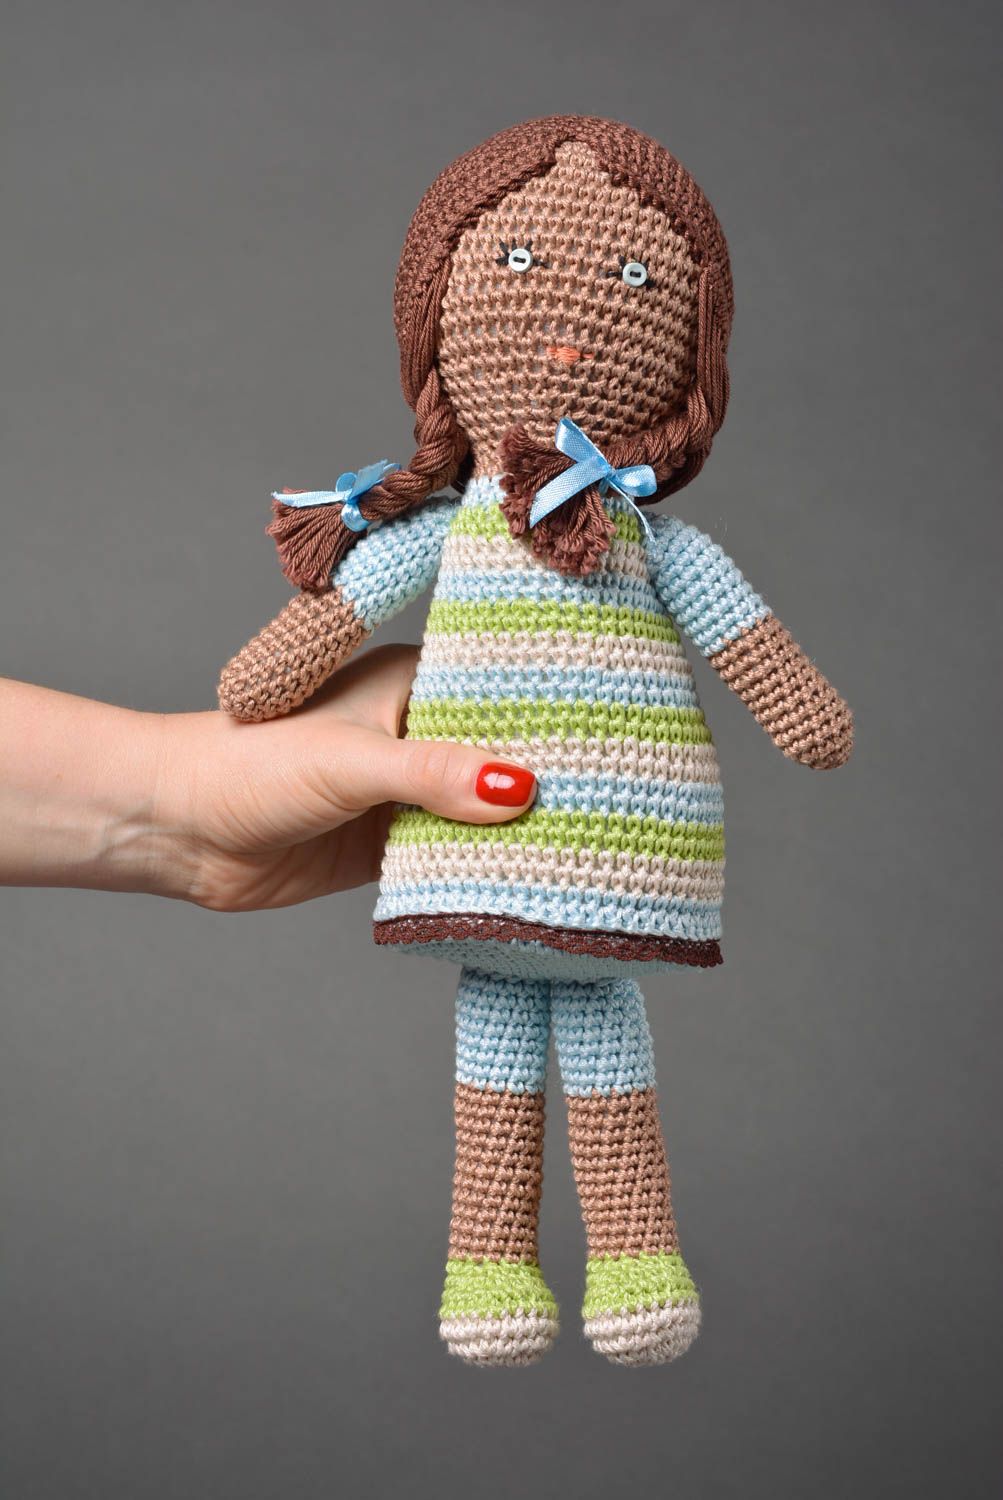 Handmade doll designer toy gift for children crocheted doll decor ideas photo 3